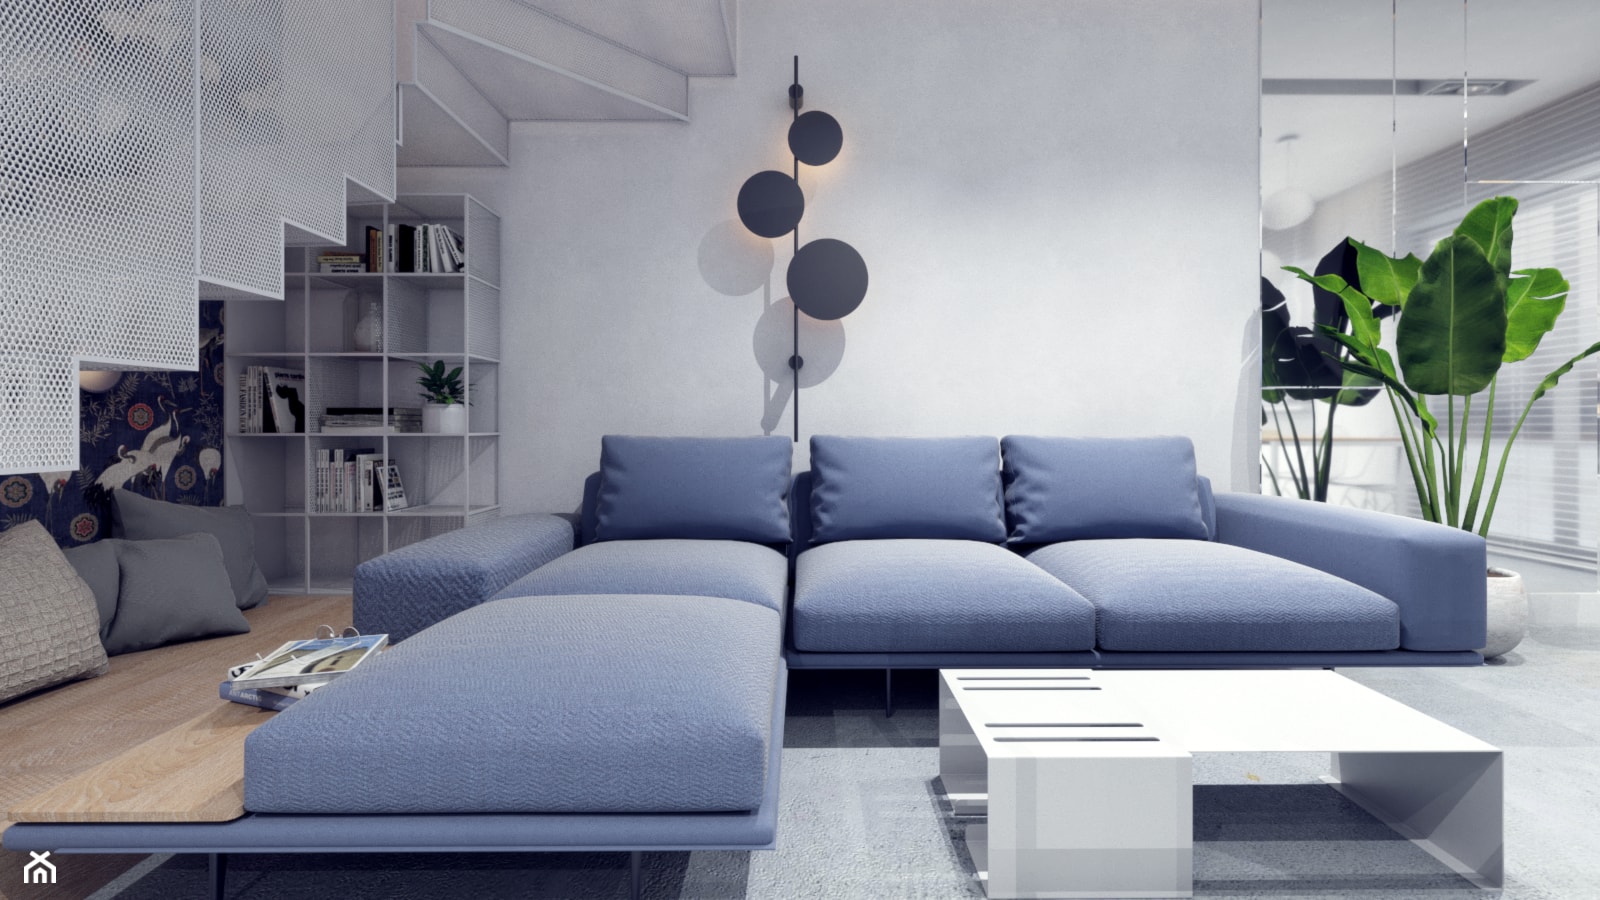 Salon / schody - styl nowoczesny - minimalizm, granat, biel i ażur - zdjęcie od NIÑAS New Interior Architecture Studio - Homebook